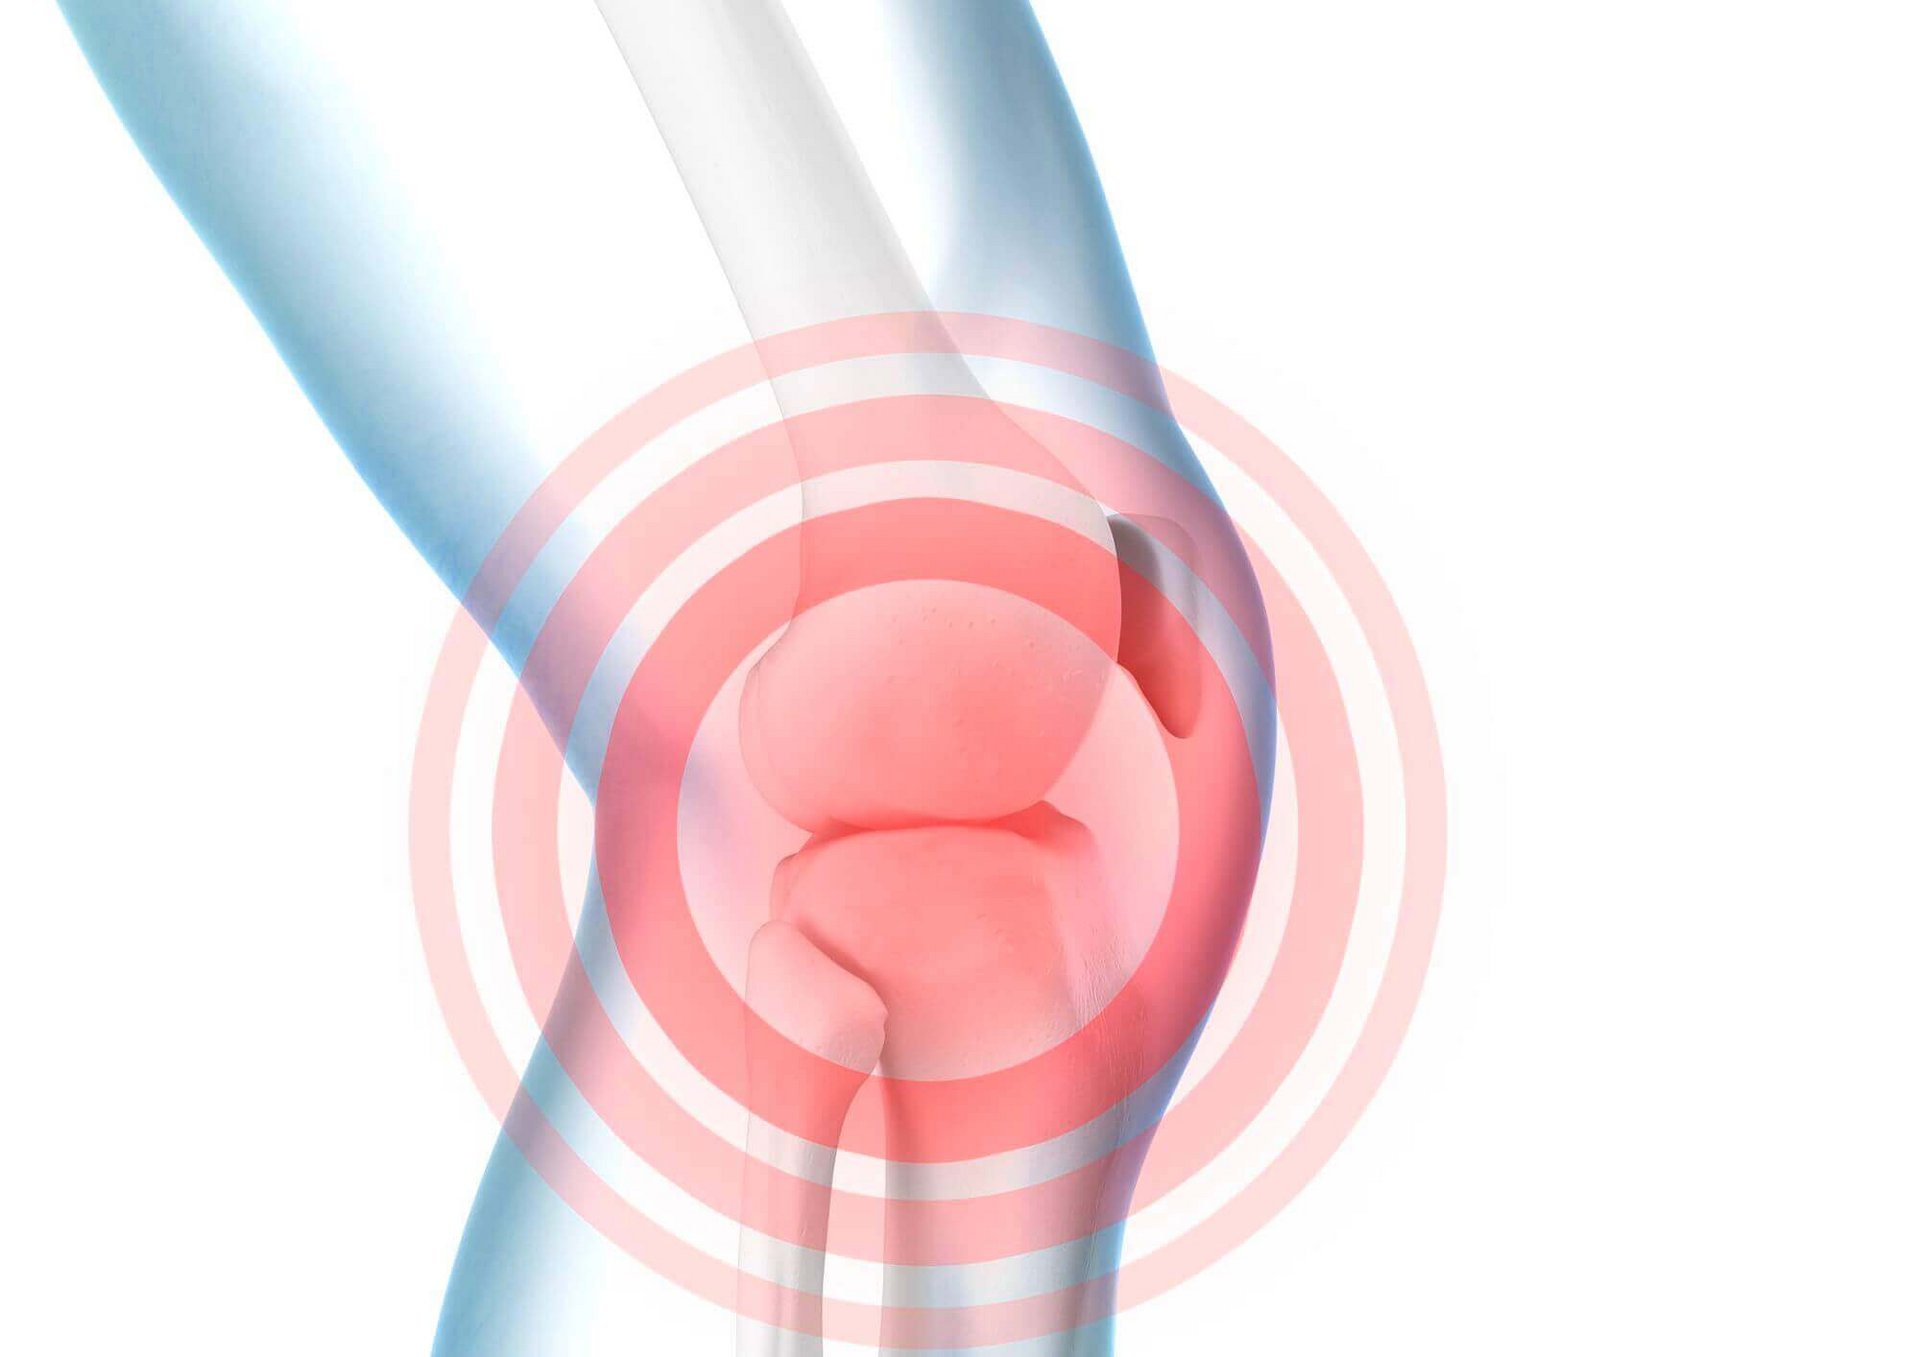 Illustration der Anatomie dies Knies bei Knieschmerzen. Schmerzen im Knie sollten ernstgenommen und mit einem Arzt abgeklärt werden.